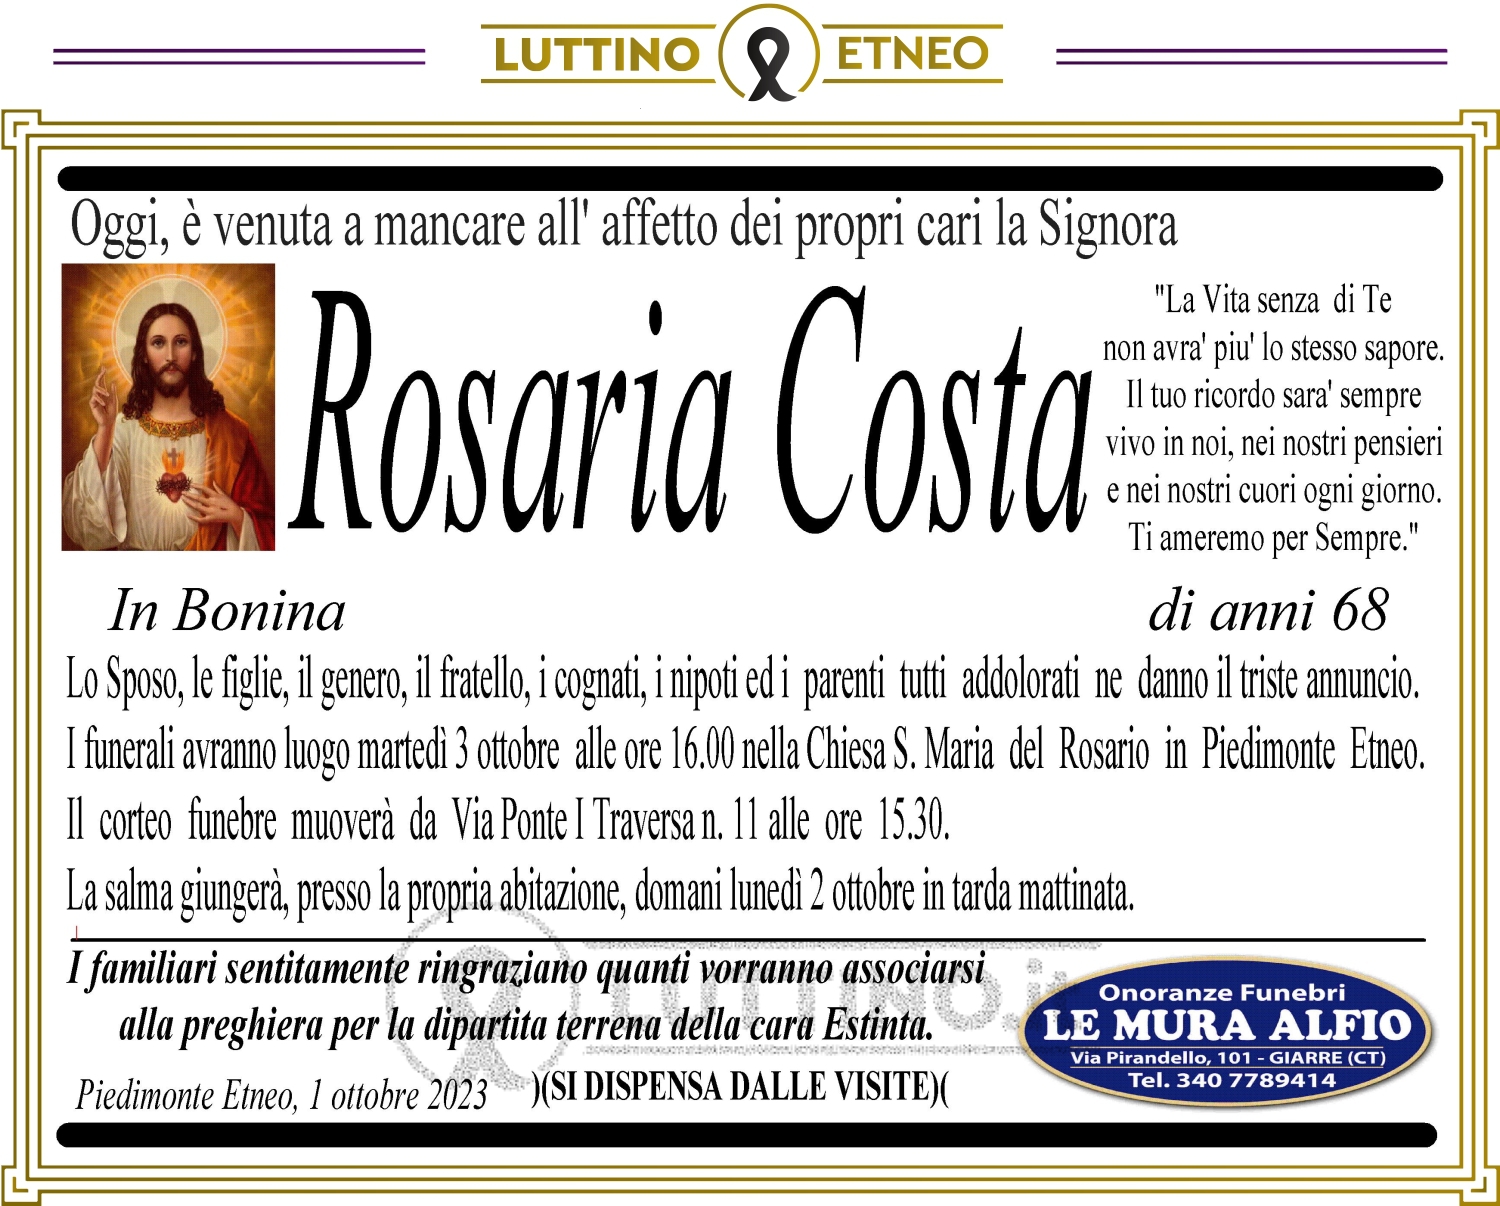 Rosaria Costa